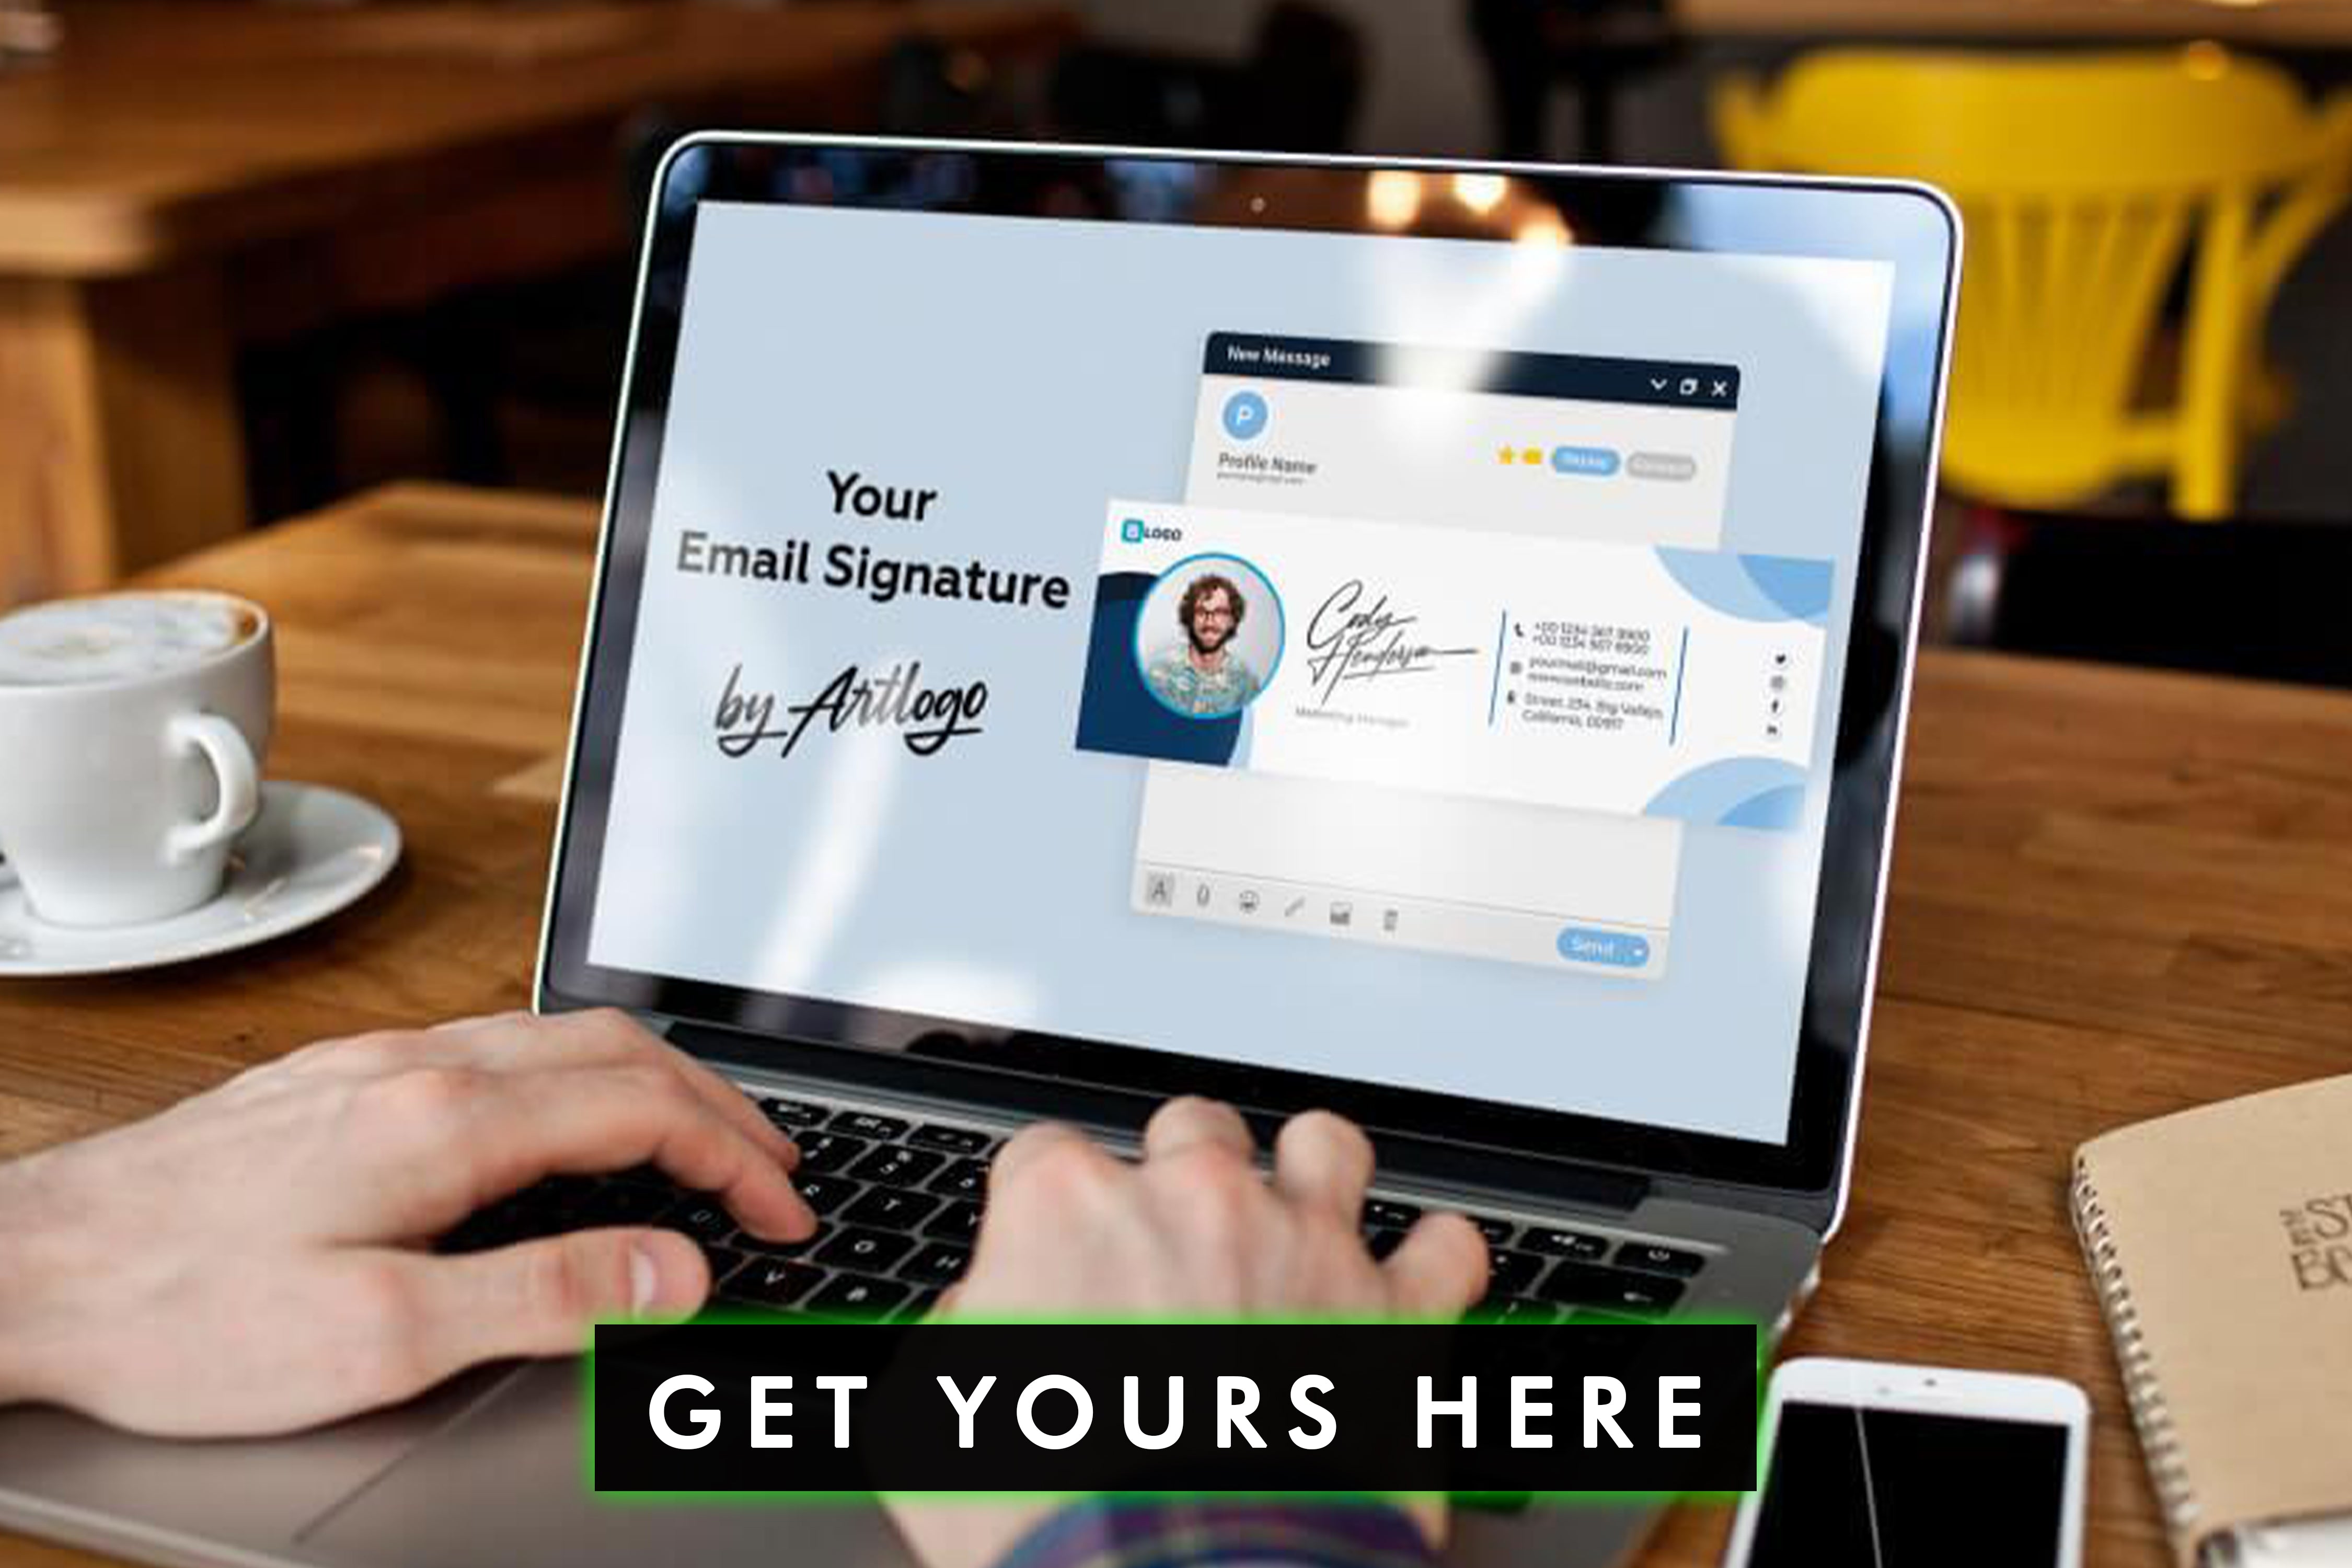 Migliorate l'immagine del vostro marchio e garantite la coerenza con una firma e-mail aziendale standardizzata che rappresenti i valori e l'identità del vostro marchio.